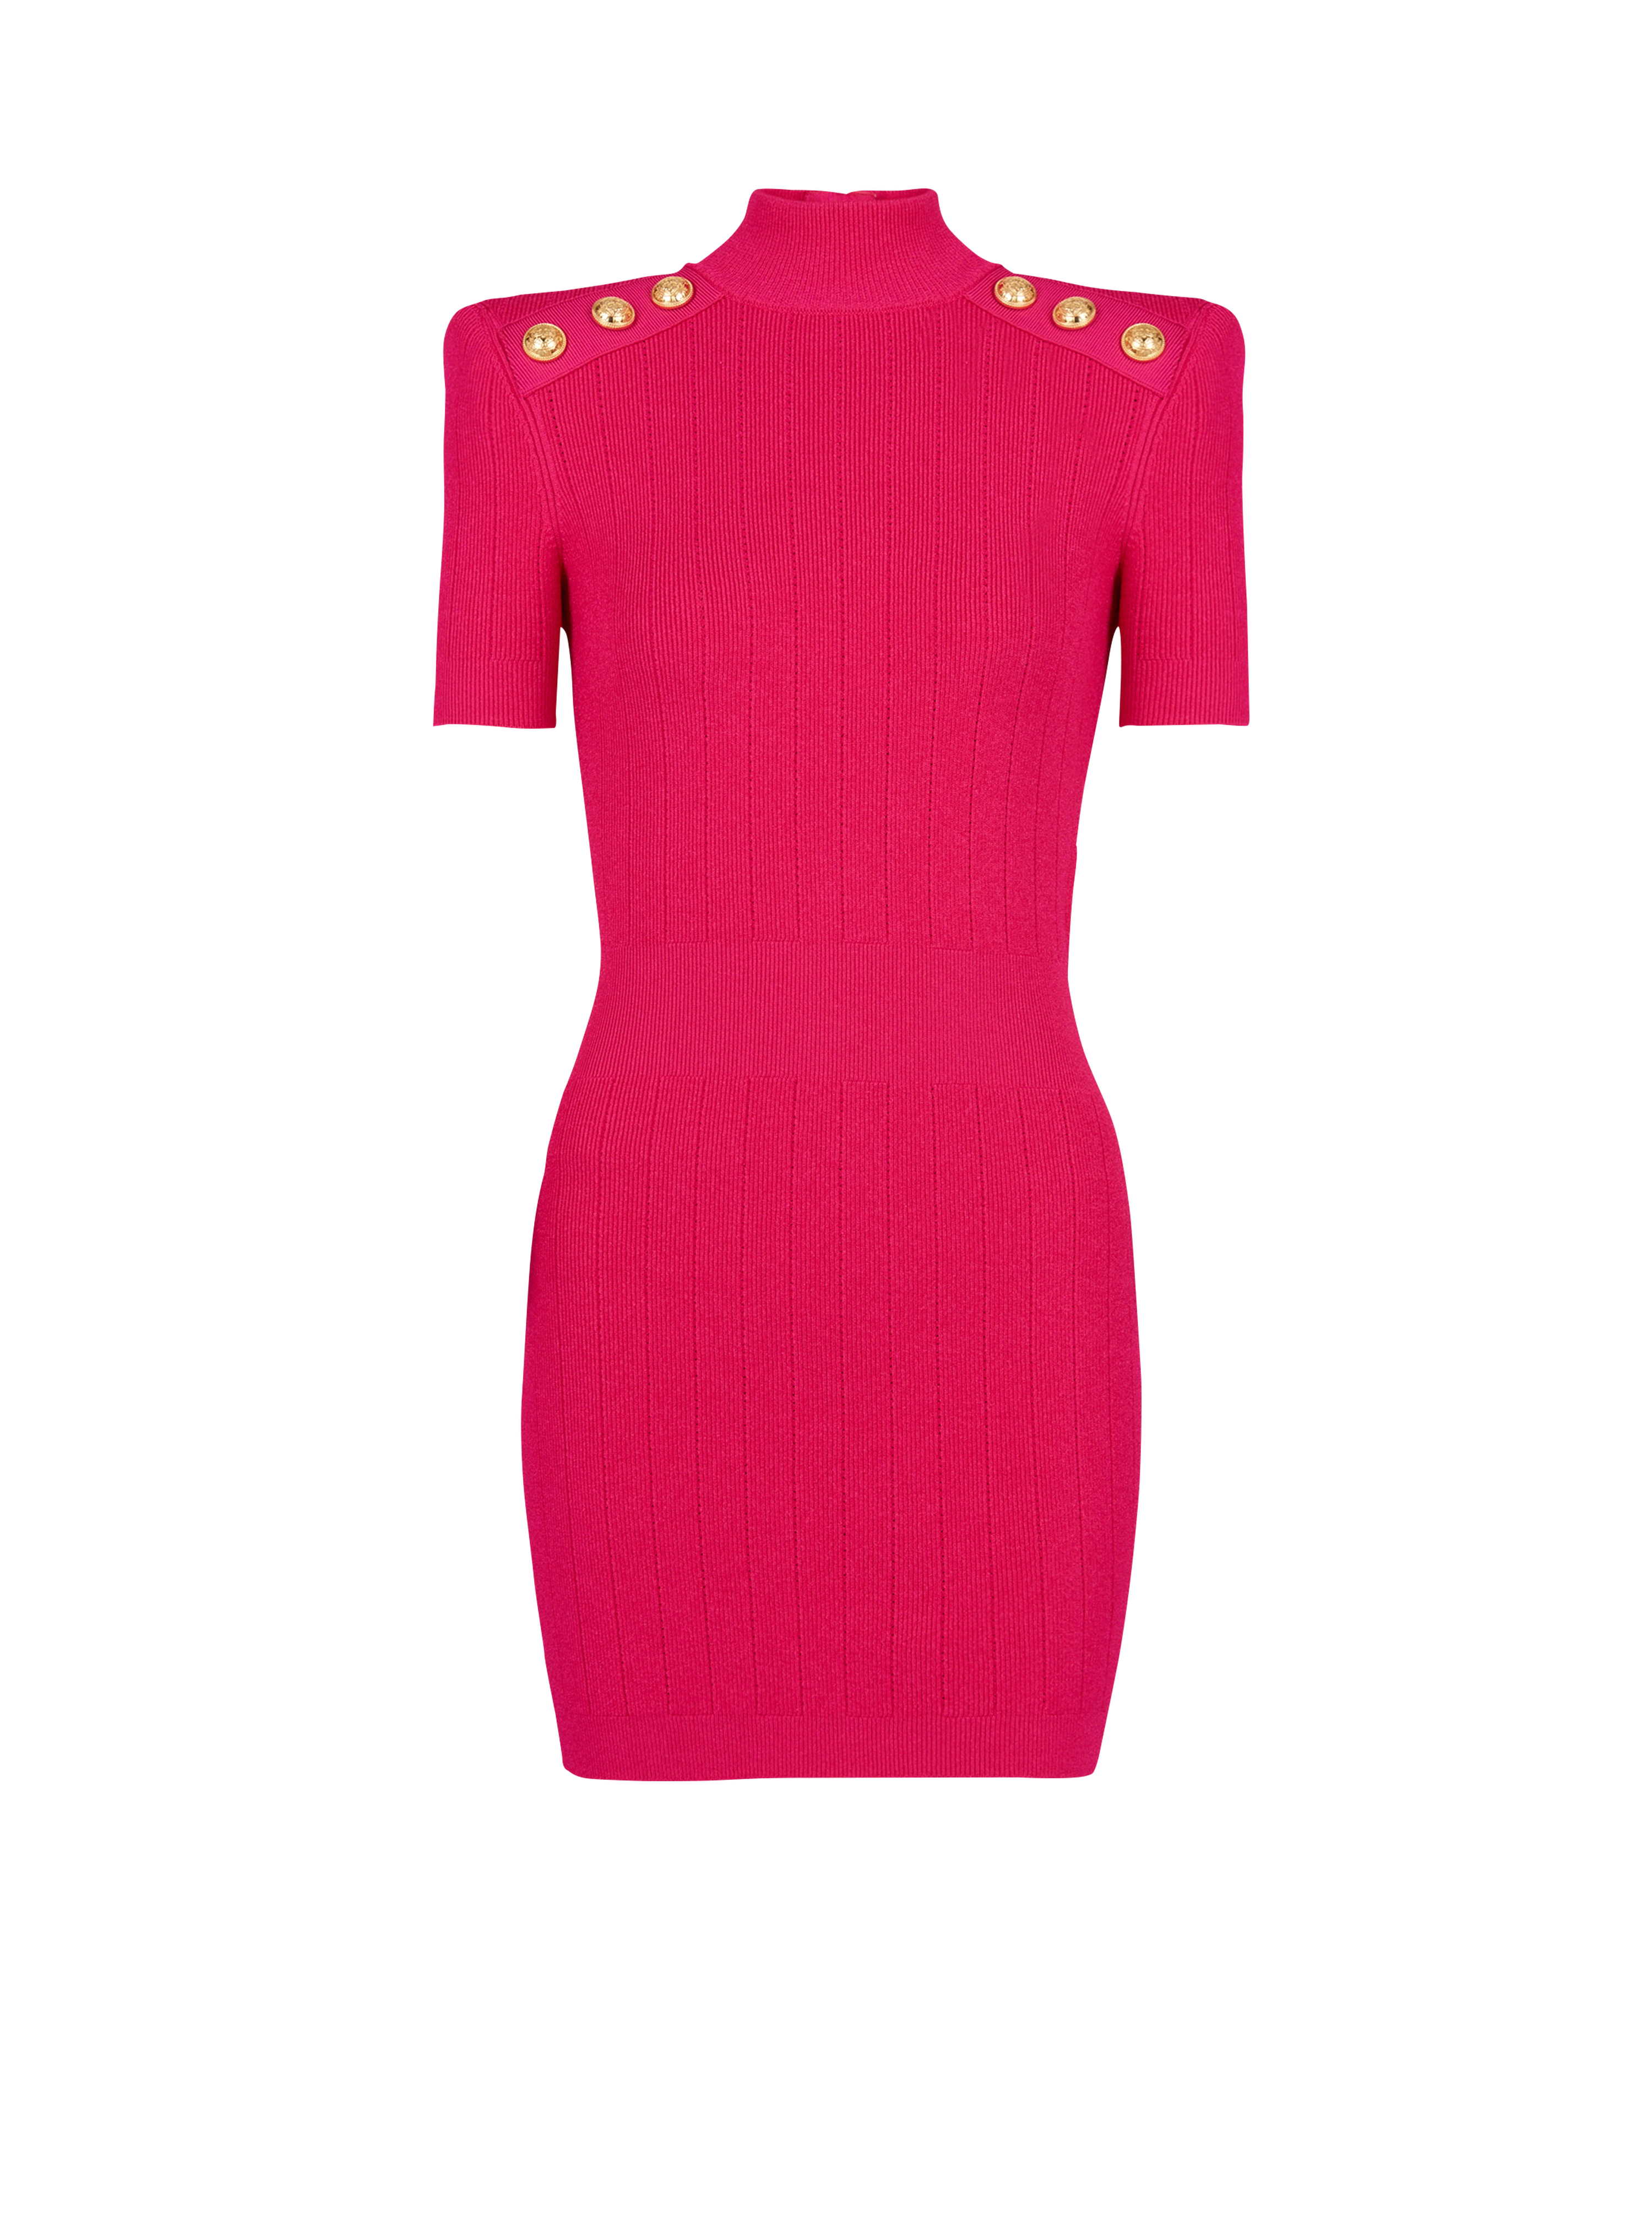 니트 쇼트 드레스, 핑크색